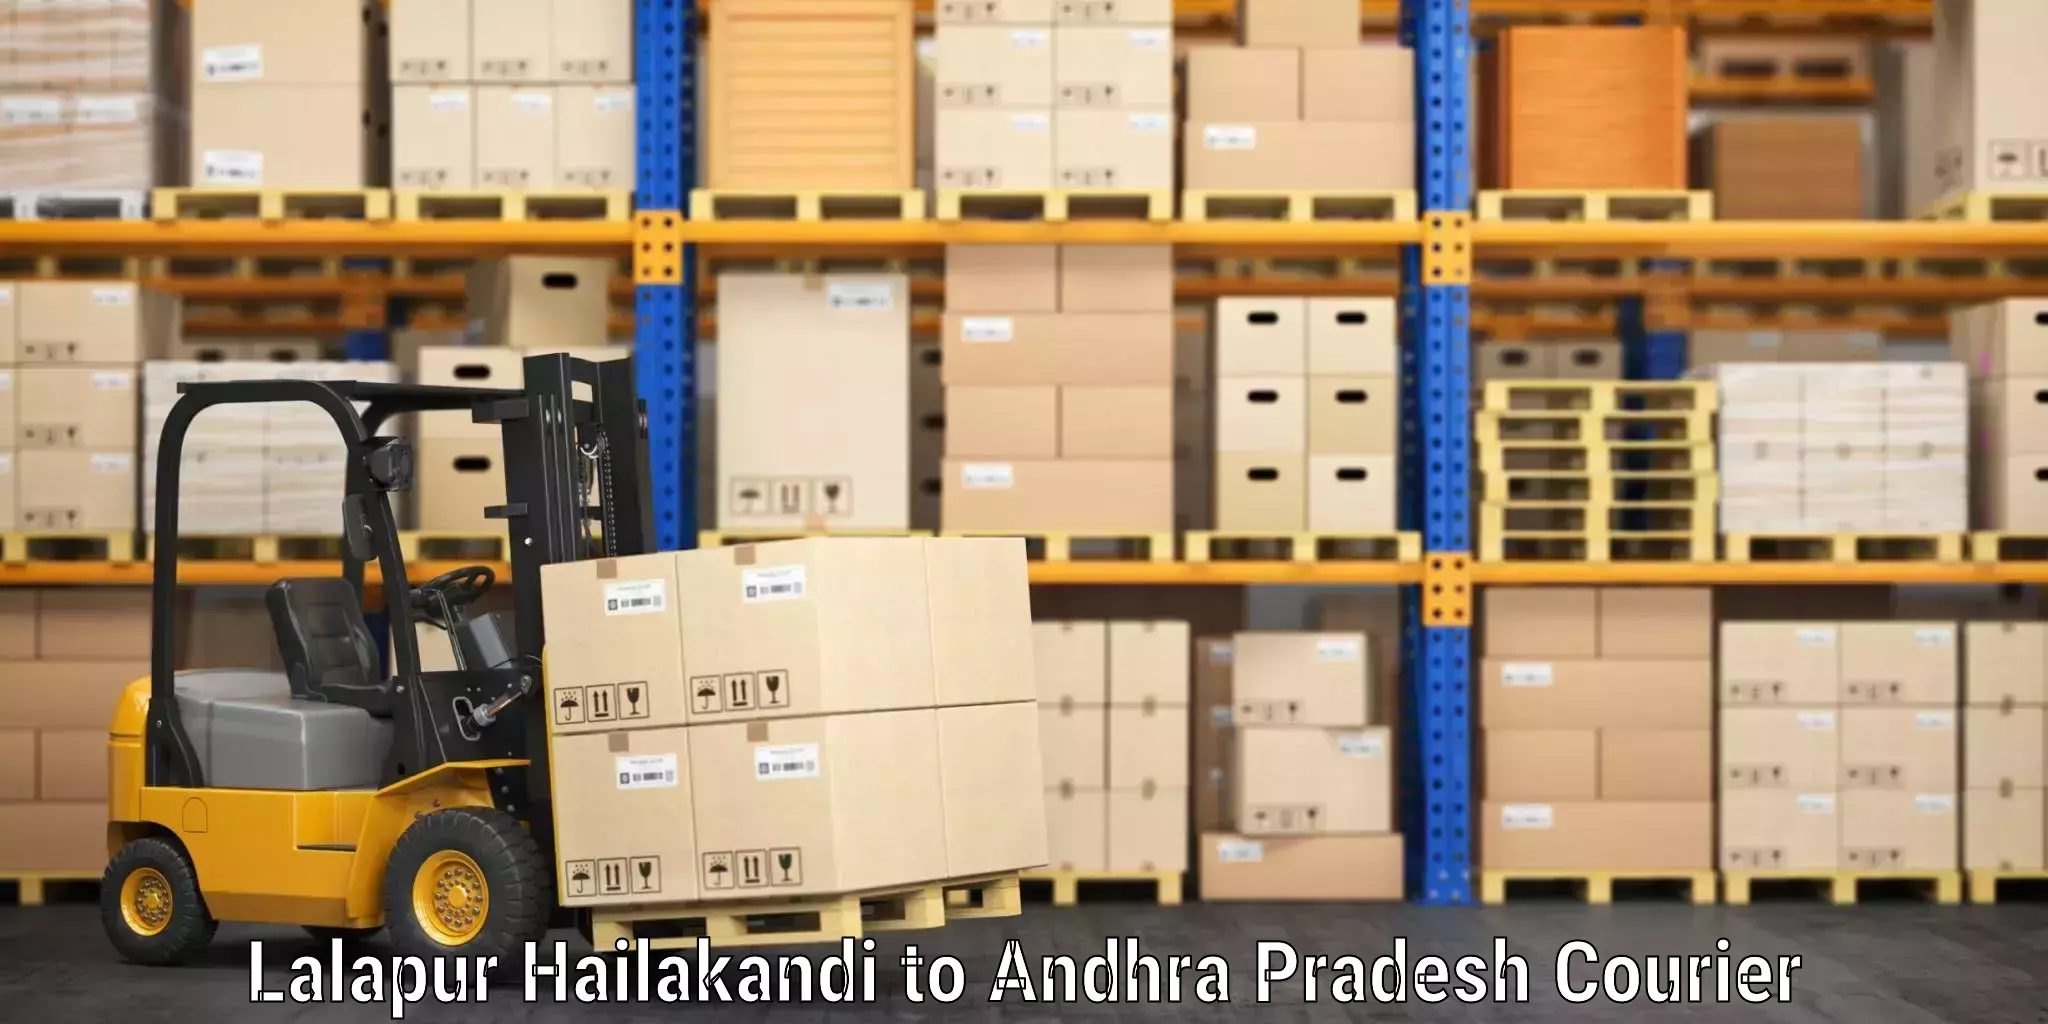 Baggage shipping experts Lalapur Hailakandi to Andhra Pradesh